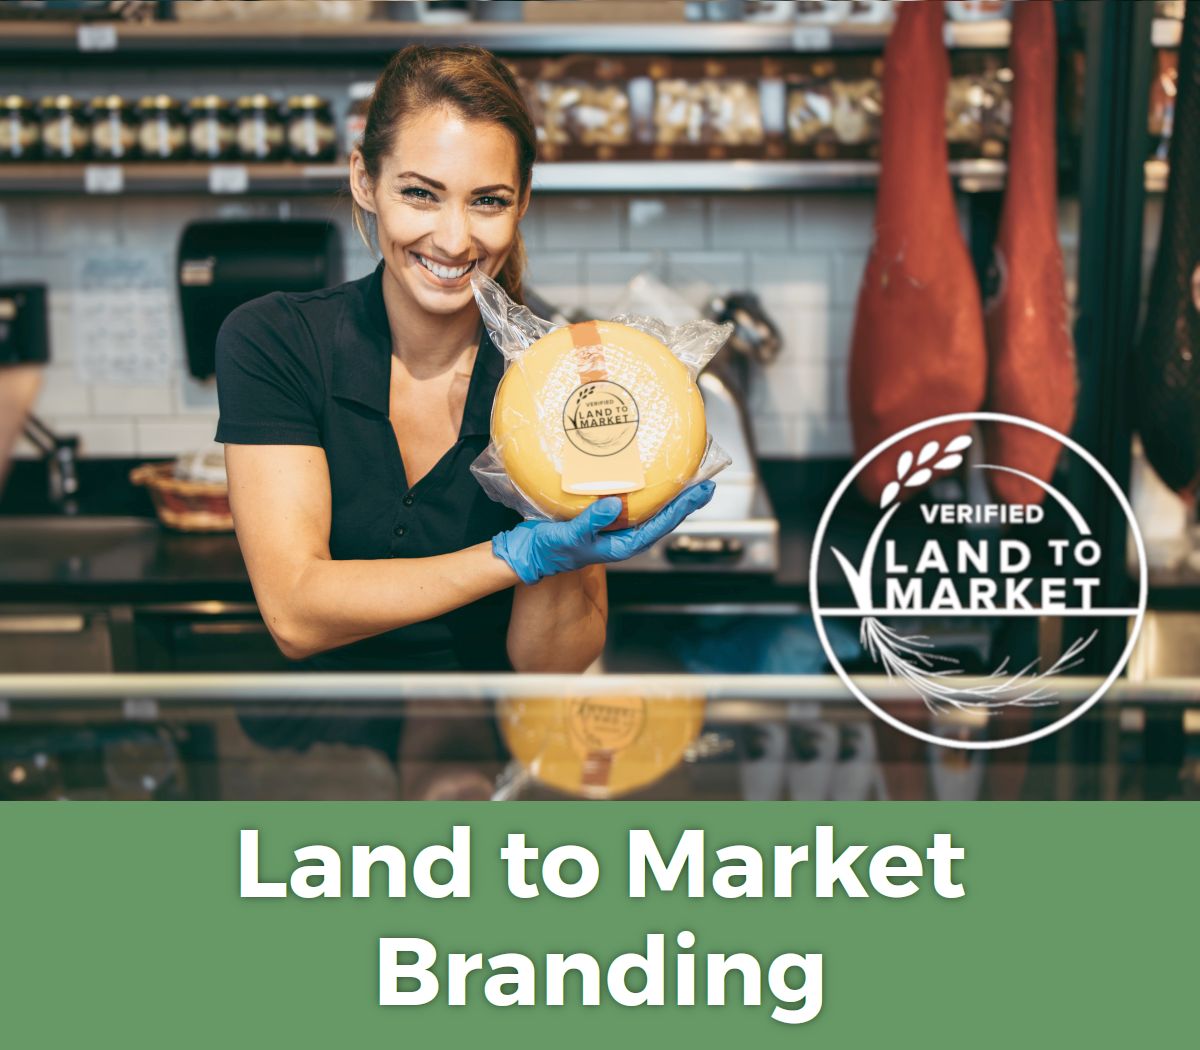 Land to Market branding